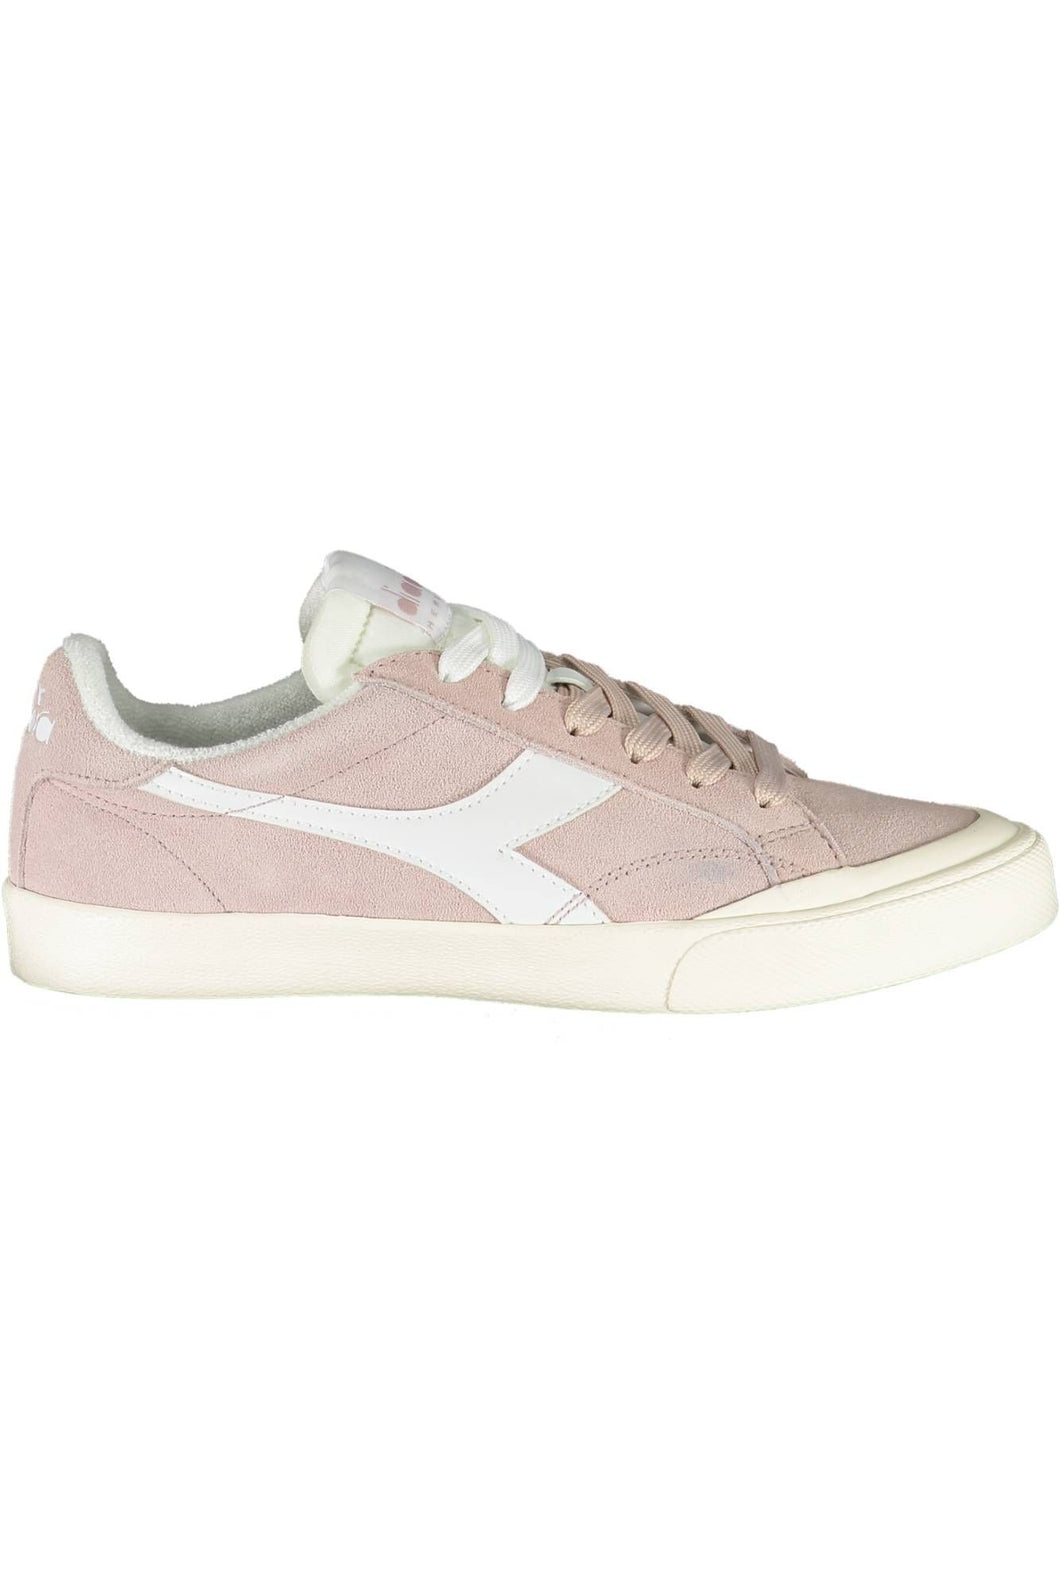 Diadora Pink Fabric Sneaker